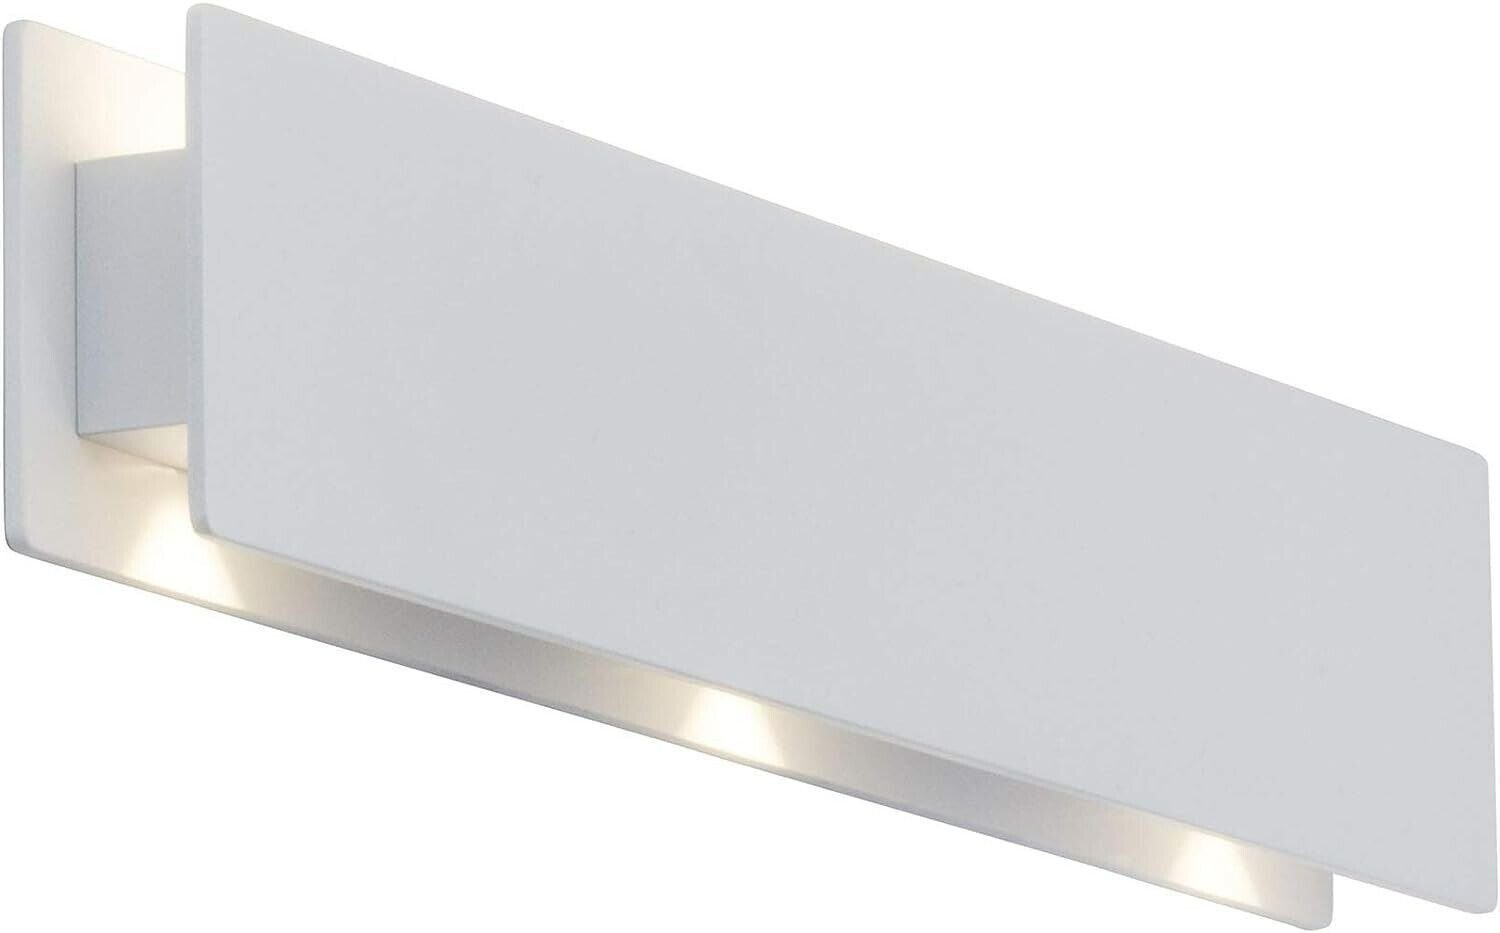 AEG LED Außen-Wandleuchte AEG Außenwandleuchte warmweiß, fest LED weiß integriert, 8.4W,LED SMD-Chip,504lm,3000K,IP54, LED Warmweiß, Schutzart IP54 Court